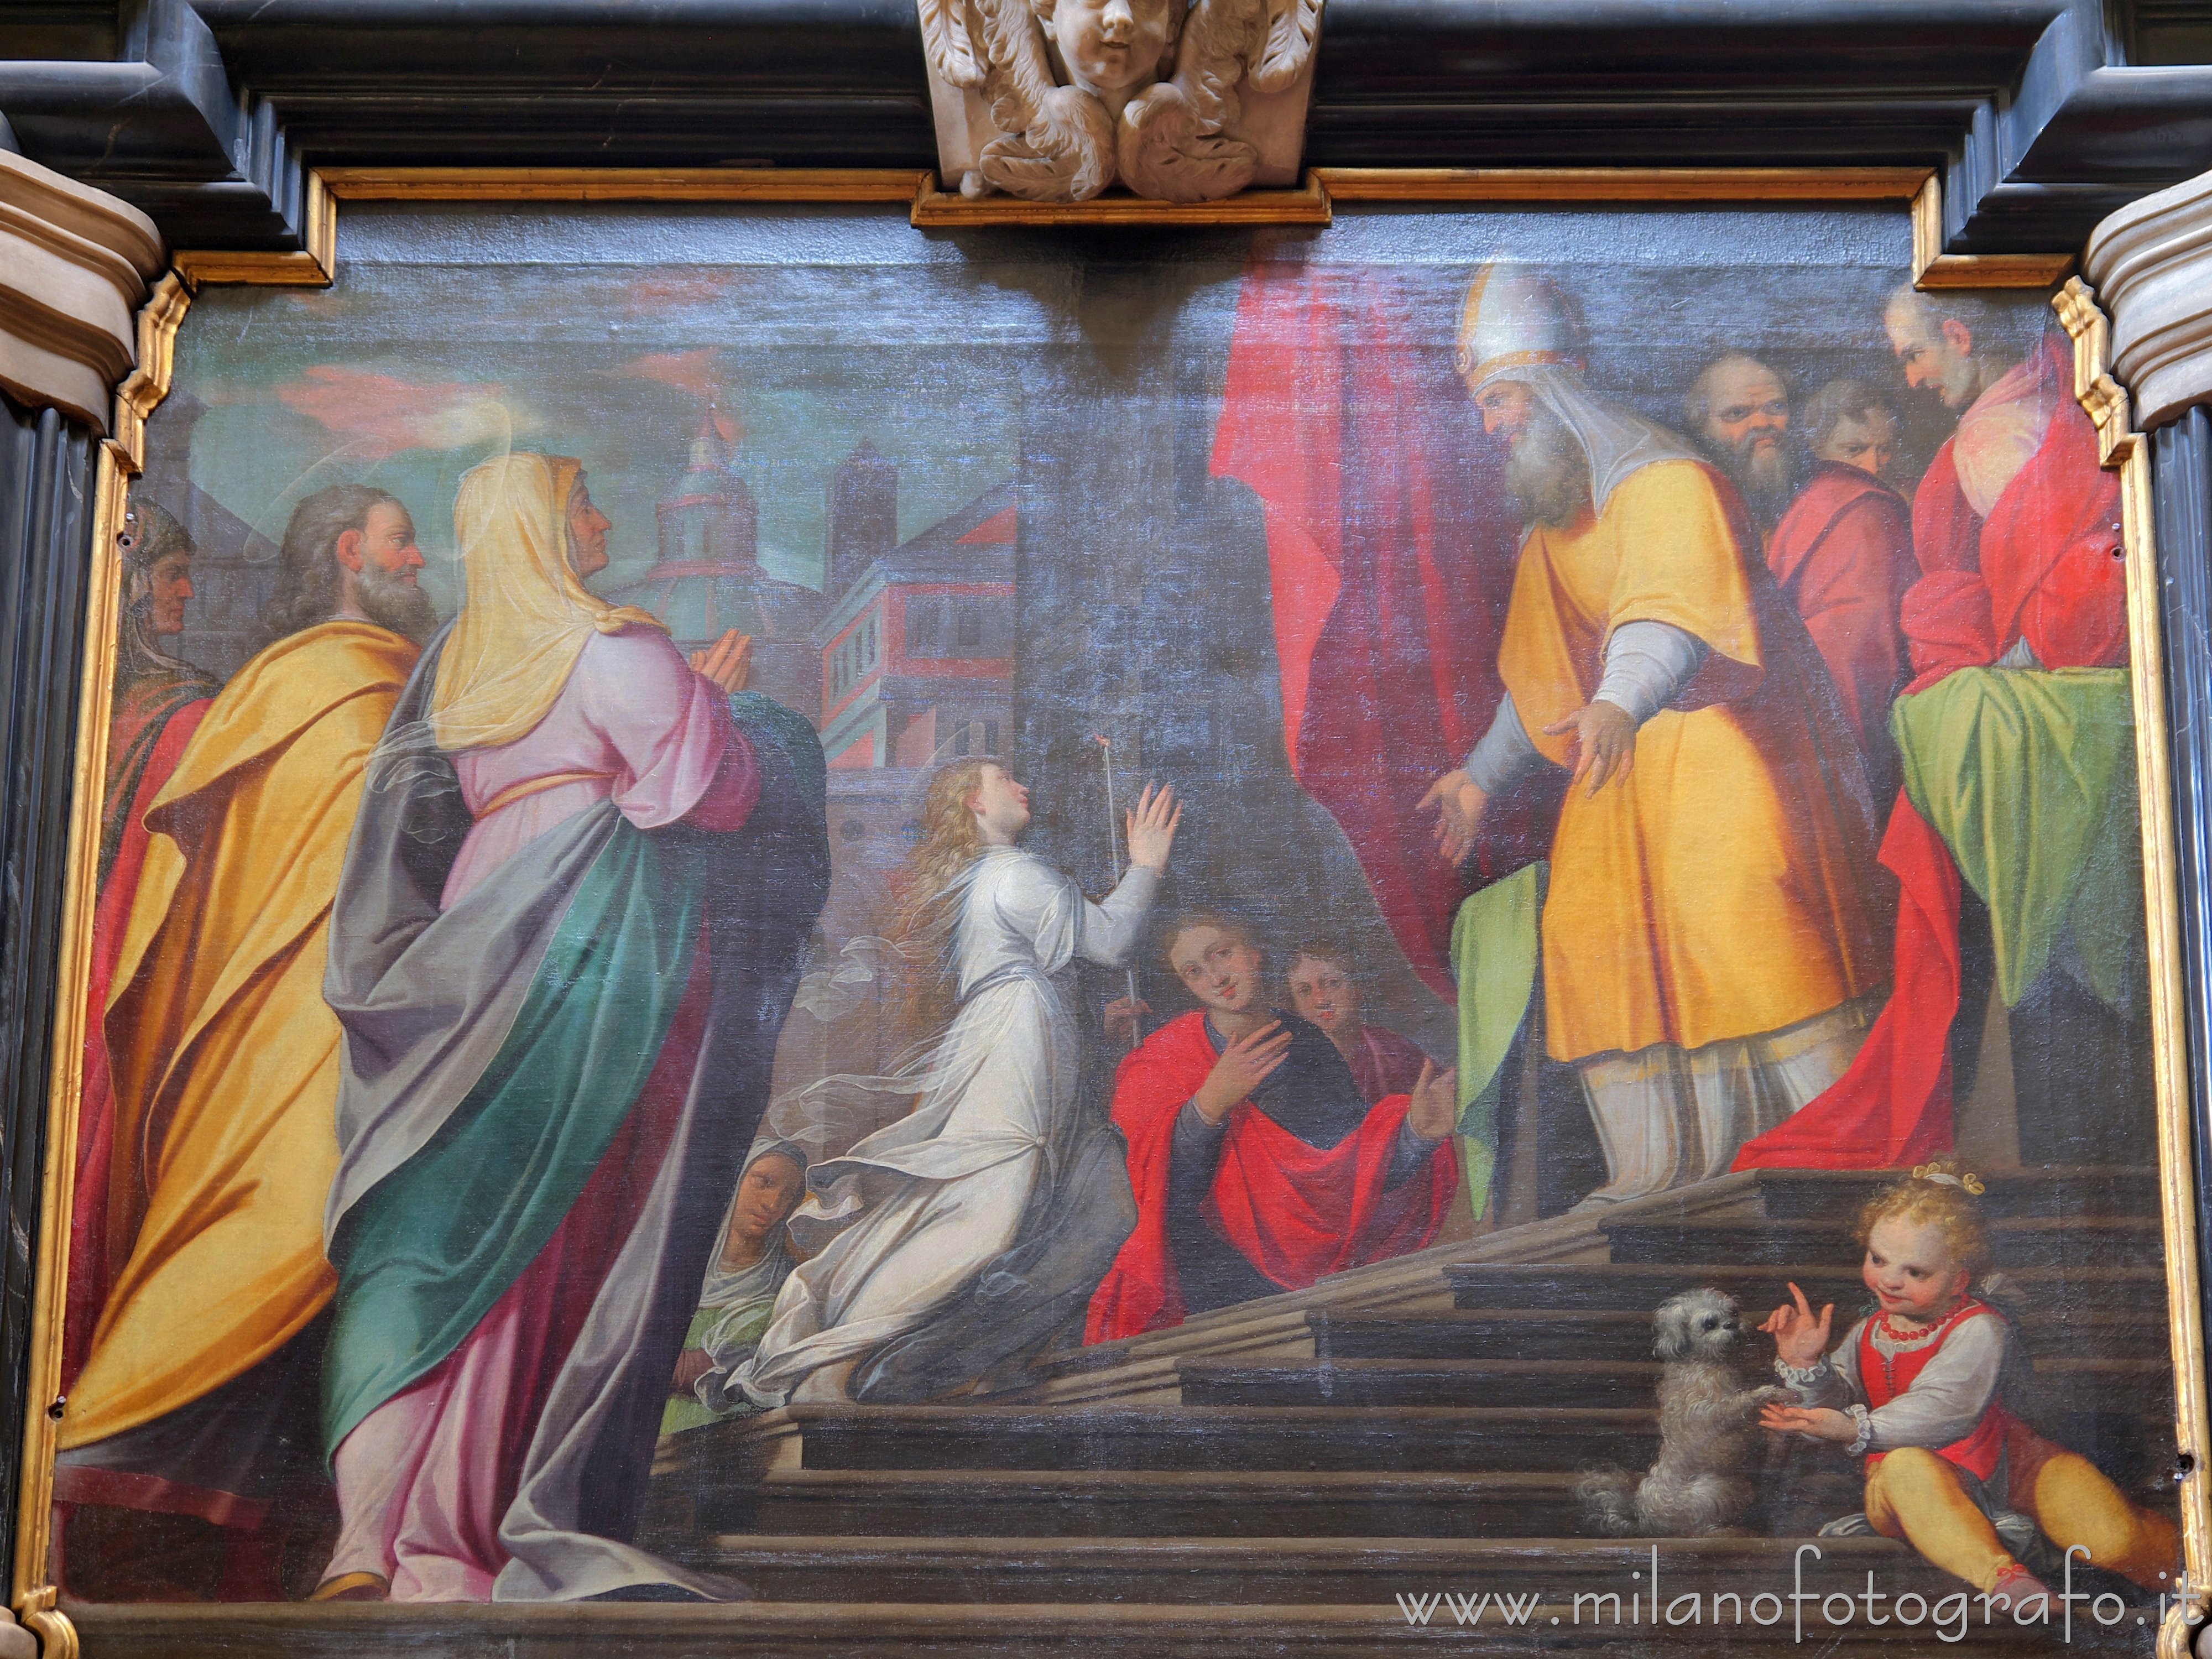 Milano: Presentazione di Gesù al tempio di Camillo Procaccini nella Chiesa di Santa Maria del Carmine - Milano